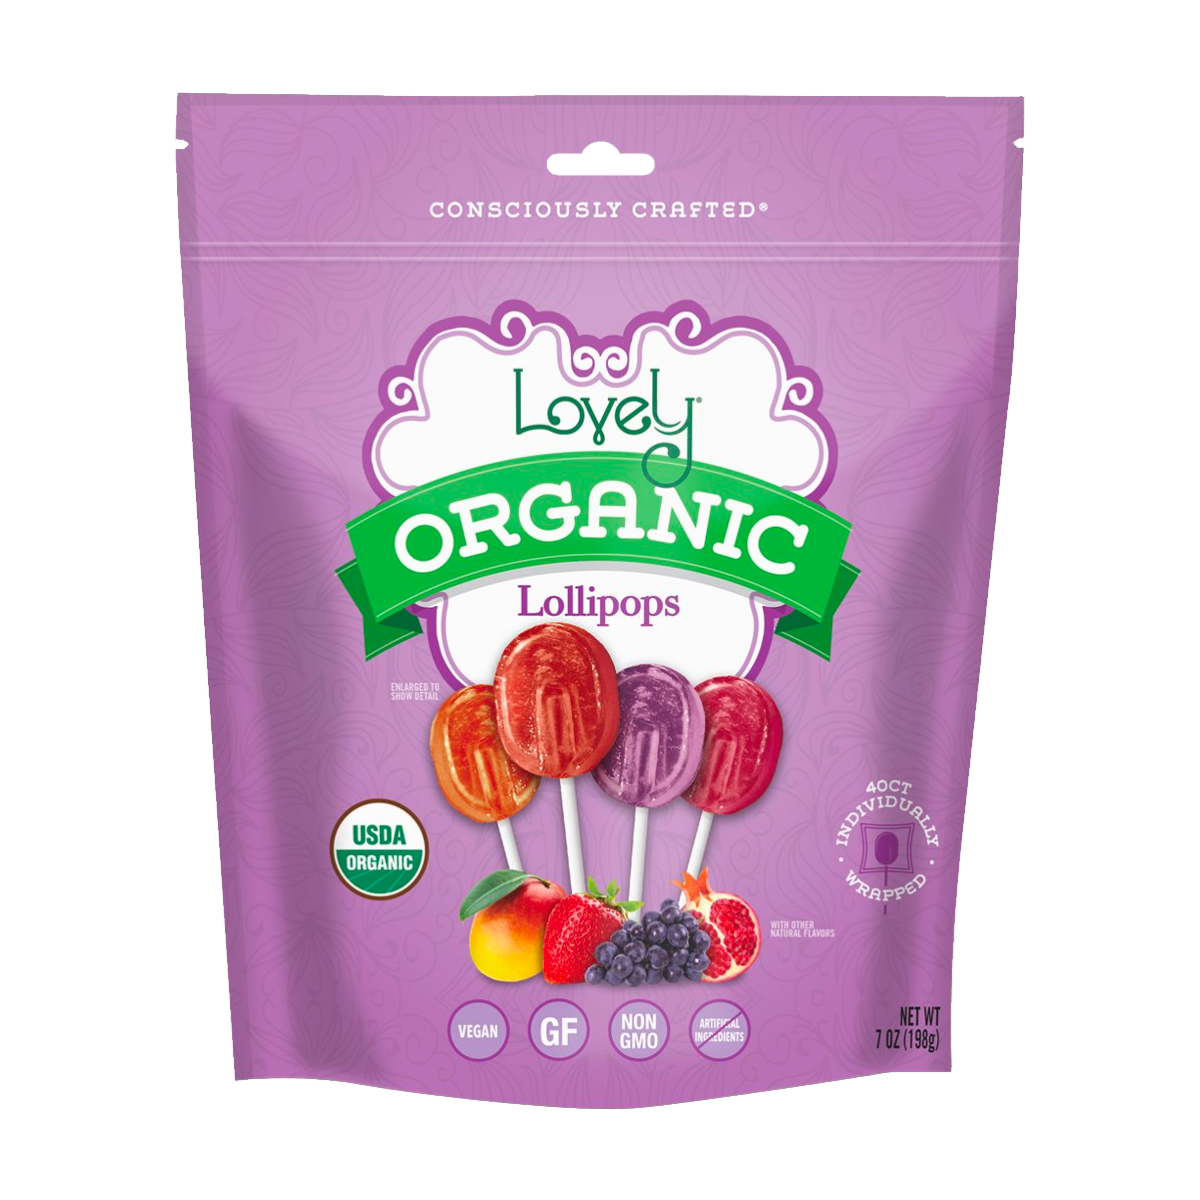 Lovely Organic Lollipops (Approx. 25 Lollipops)